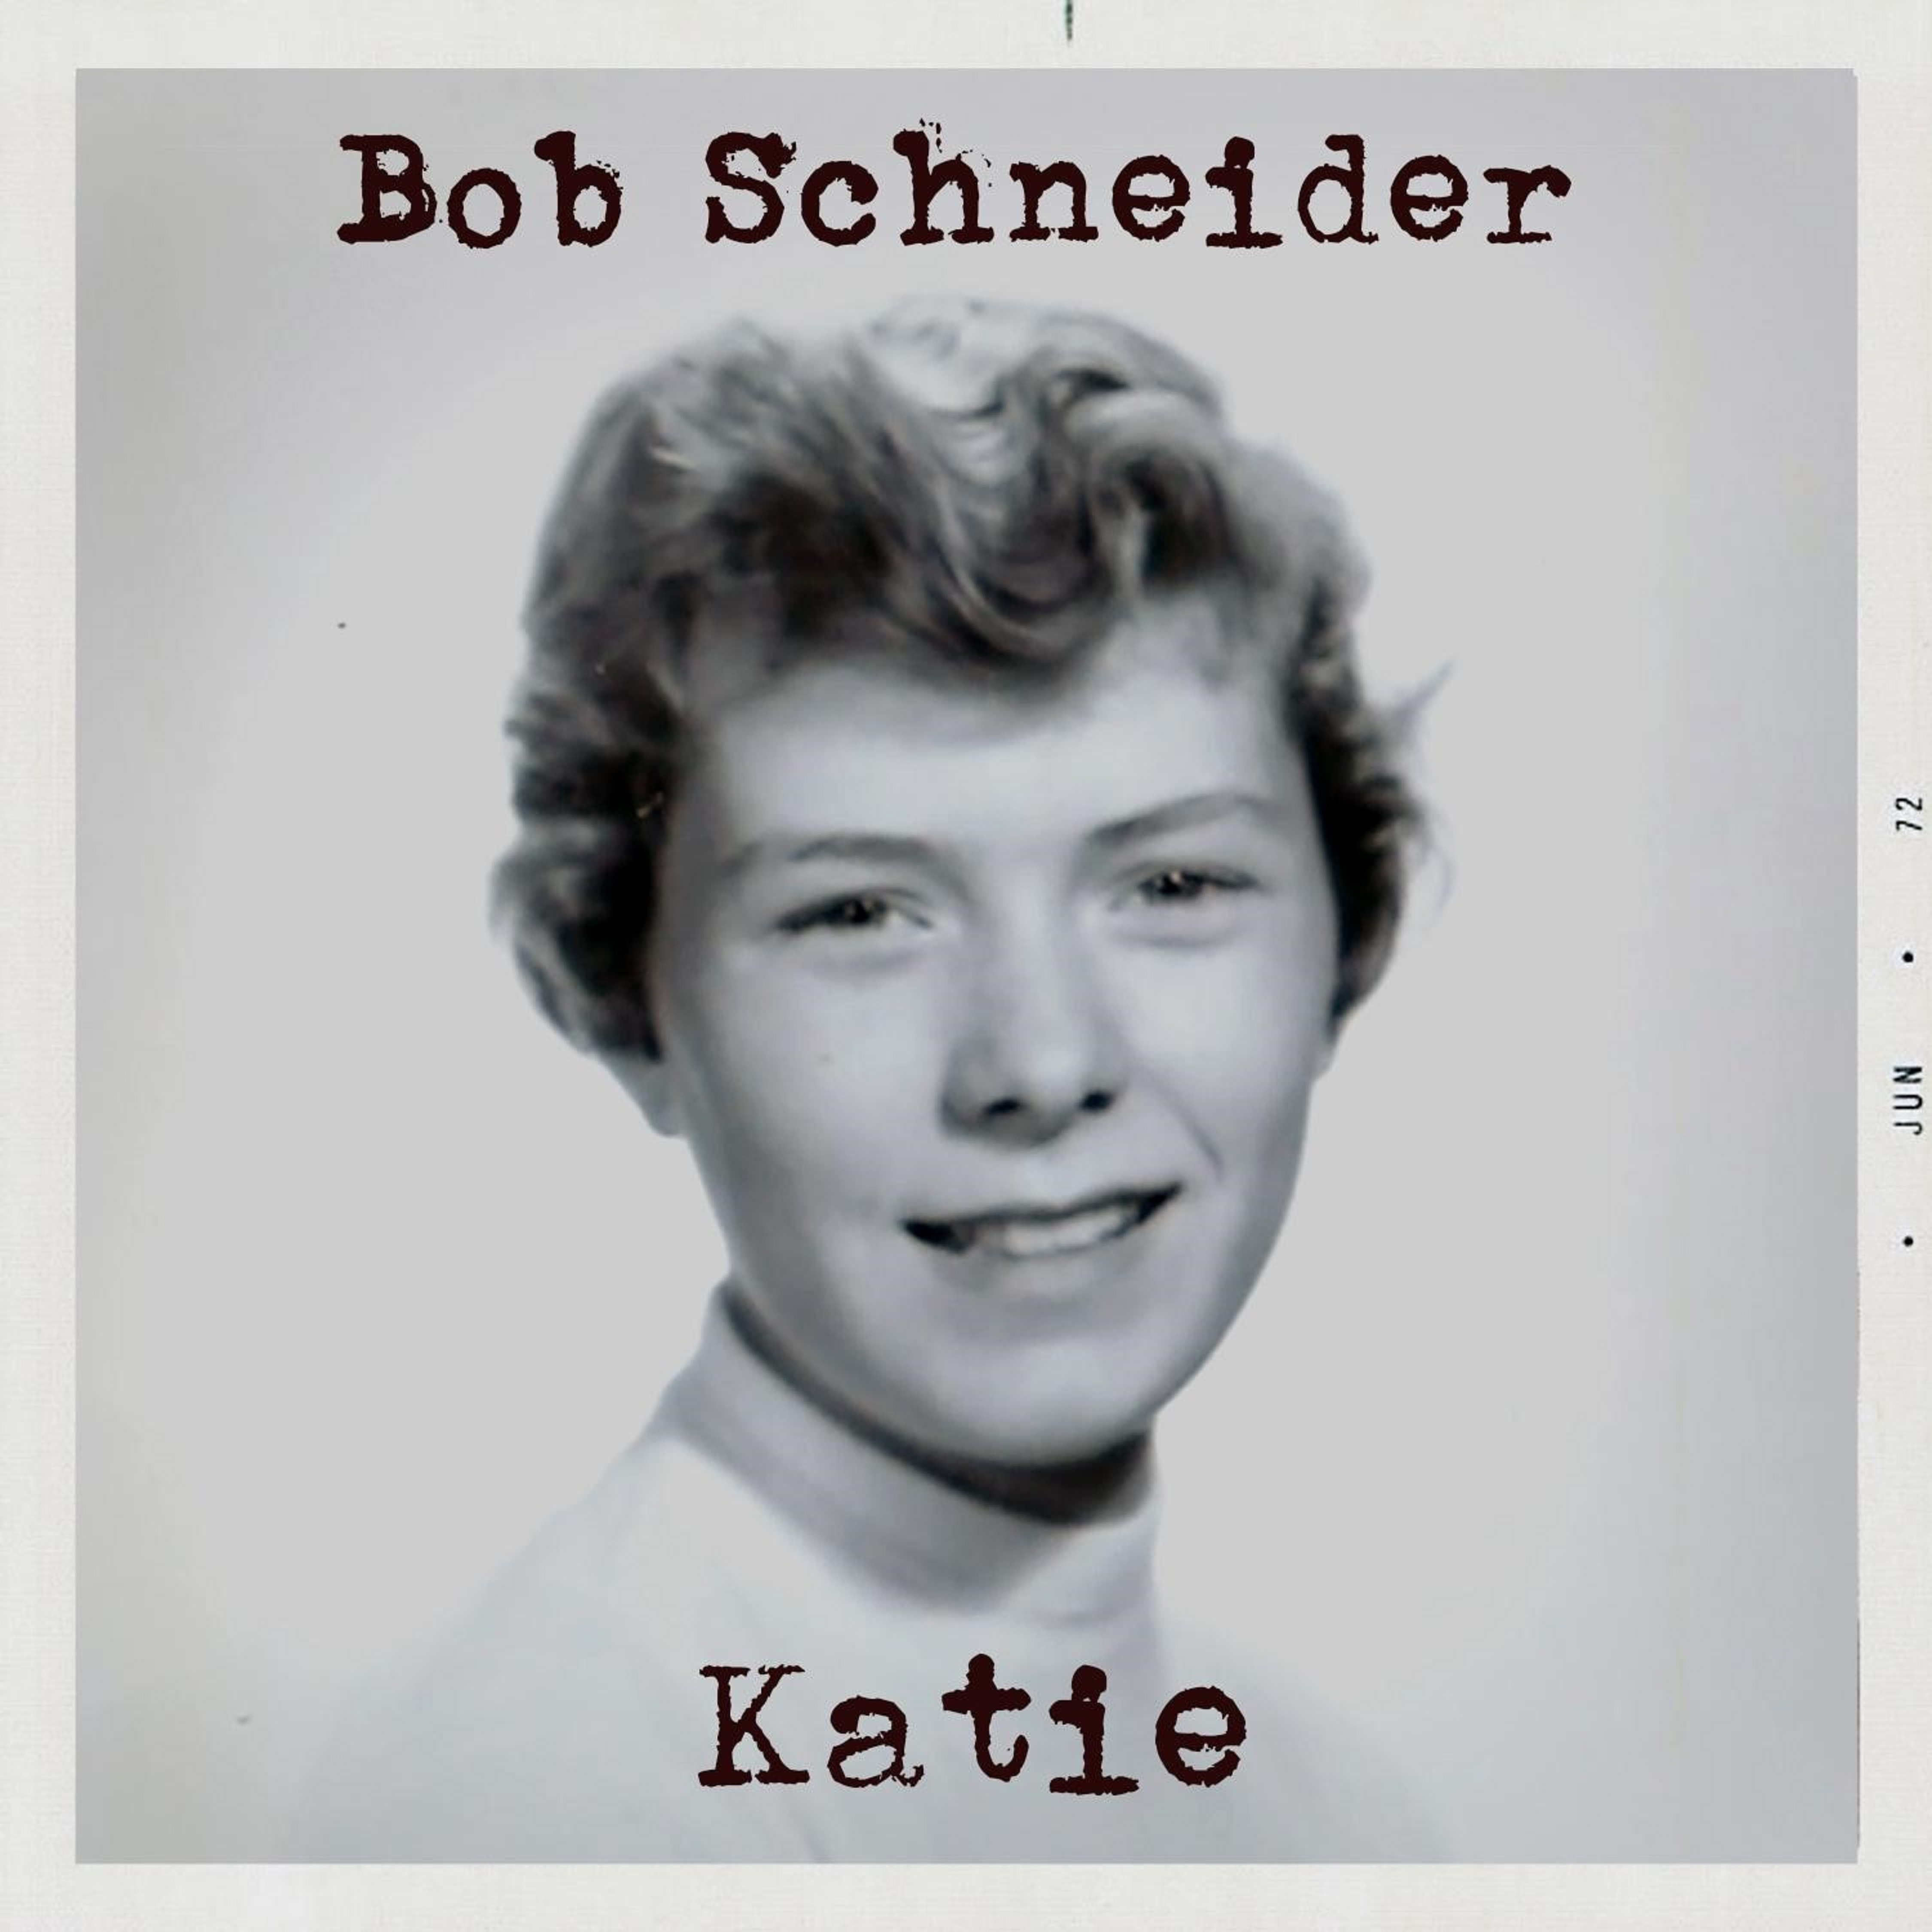  Austin Favorite Bob Schneider Releases New Single, “Katie”